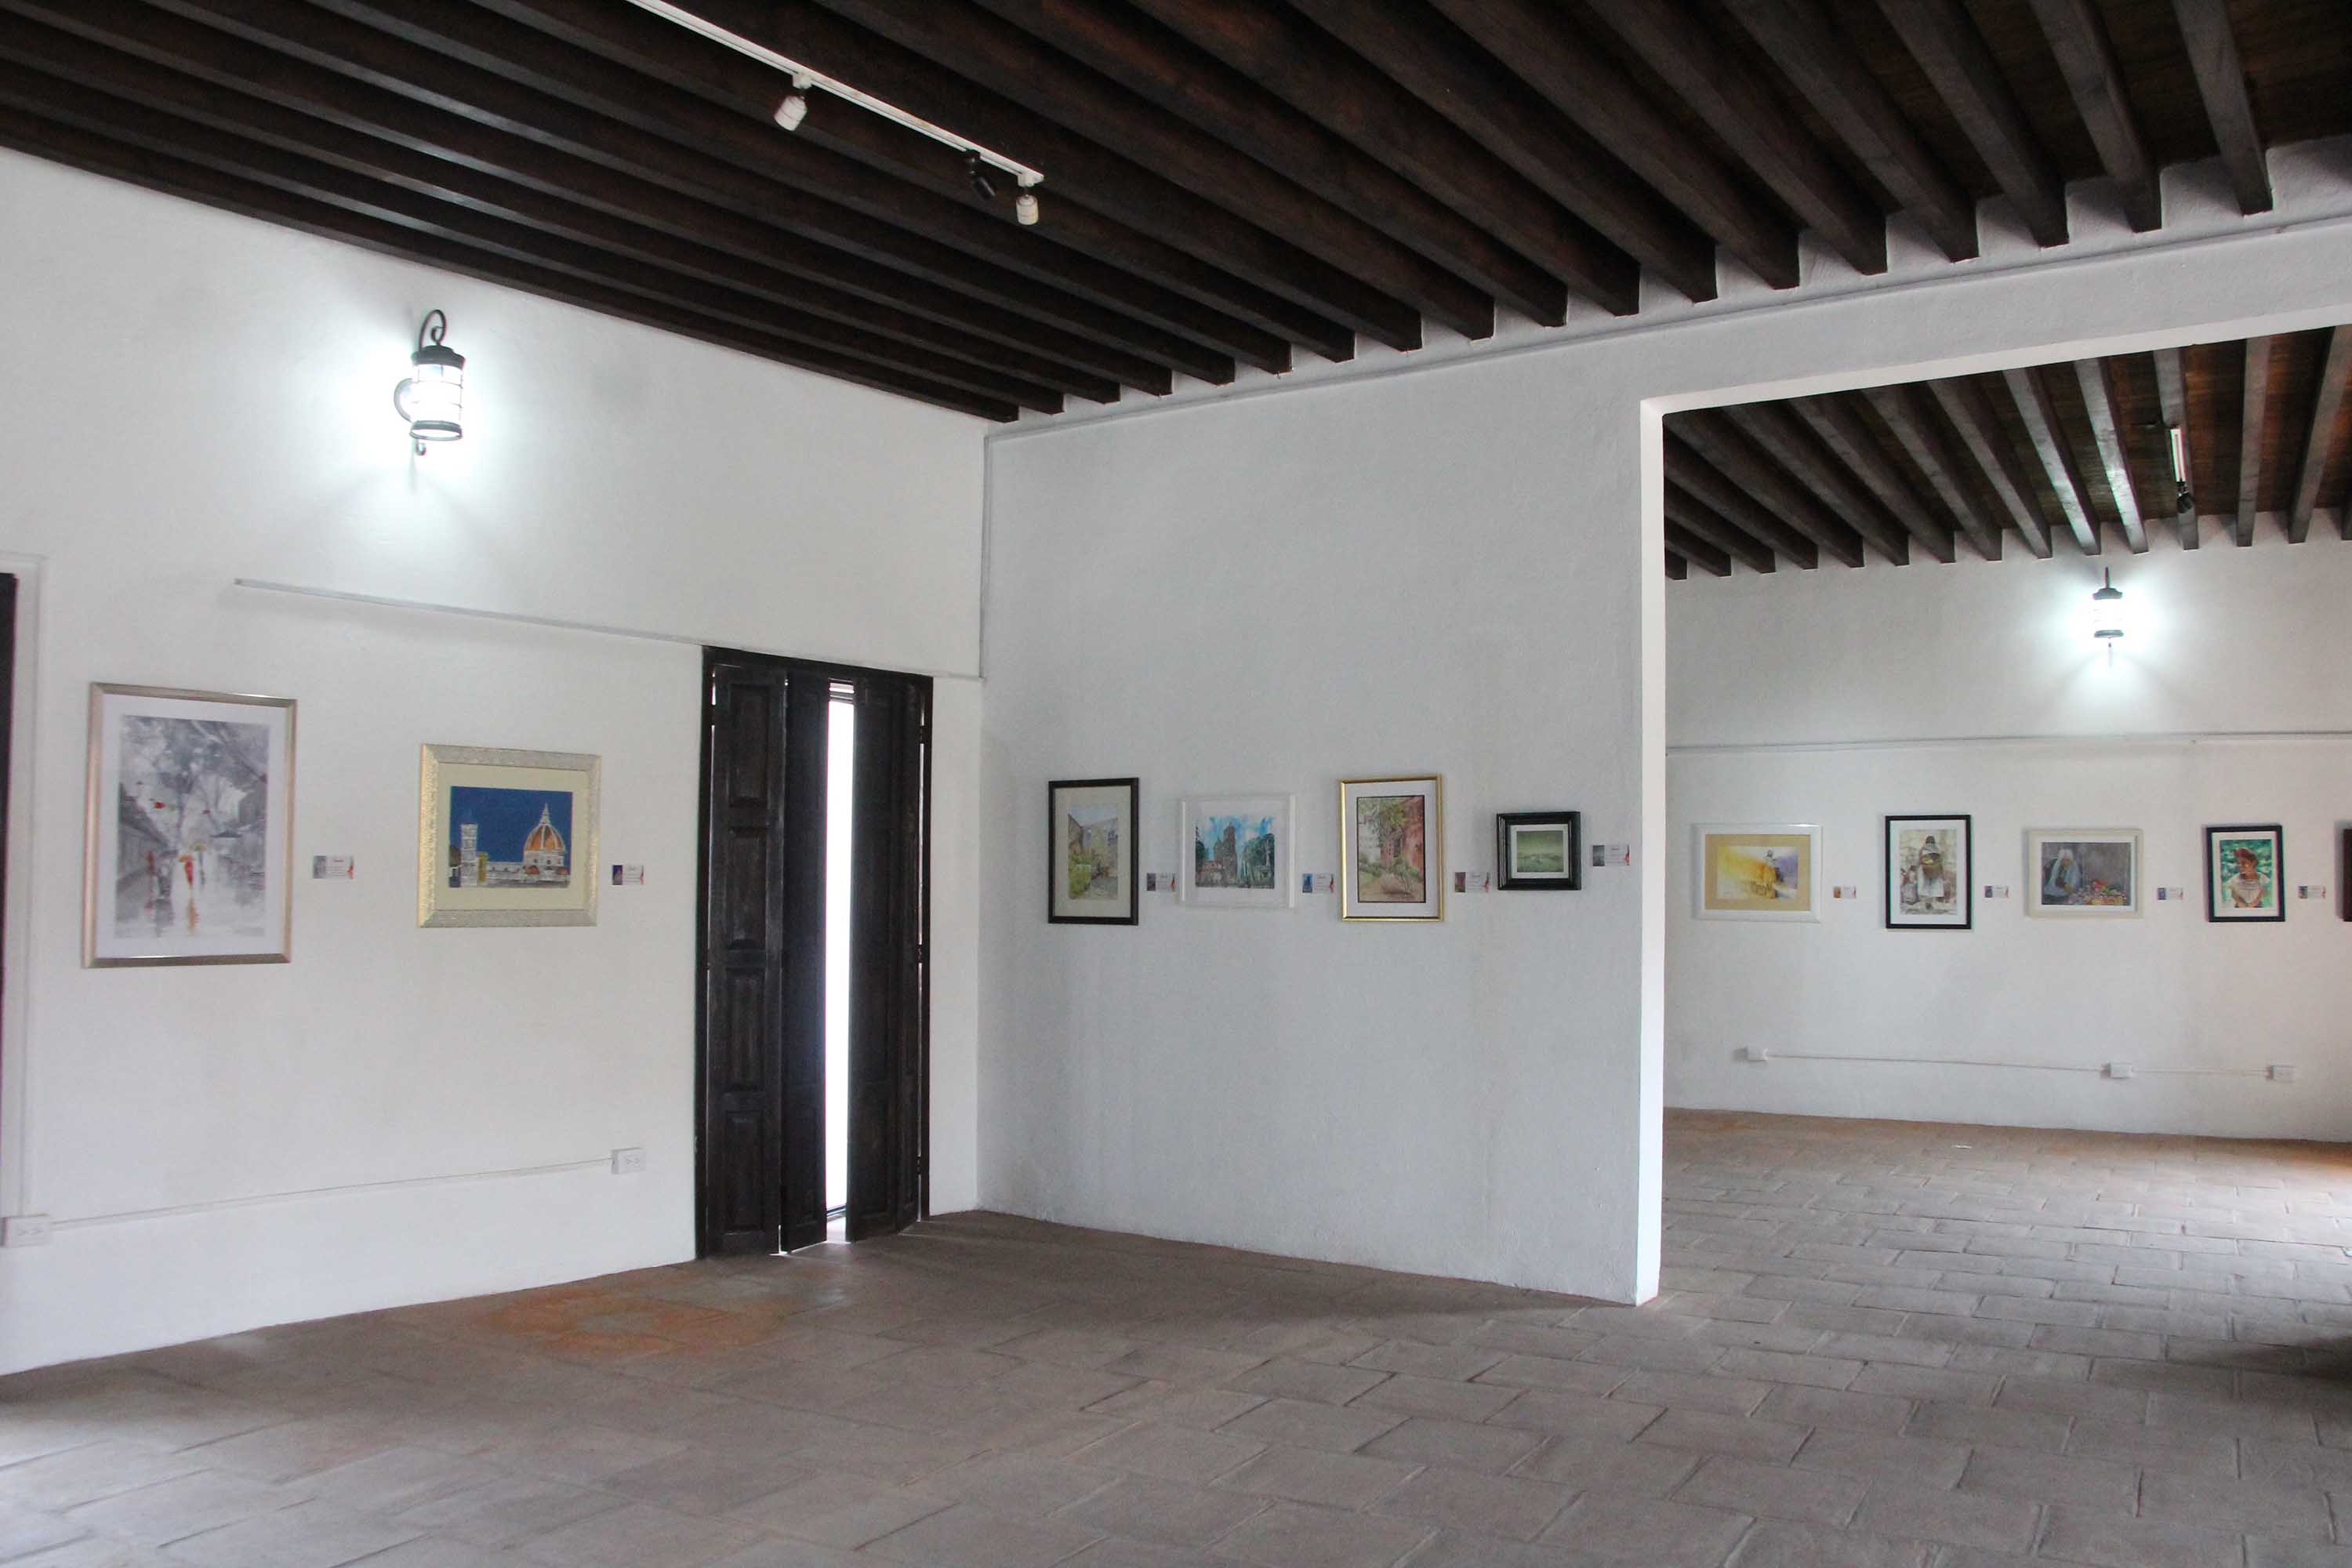 Inaugura Cultura exposición de acuarelistas poblanos en el Barrio del Artista